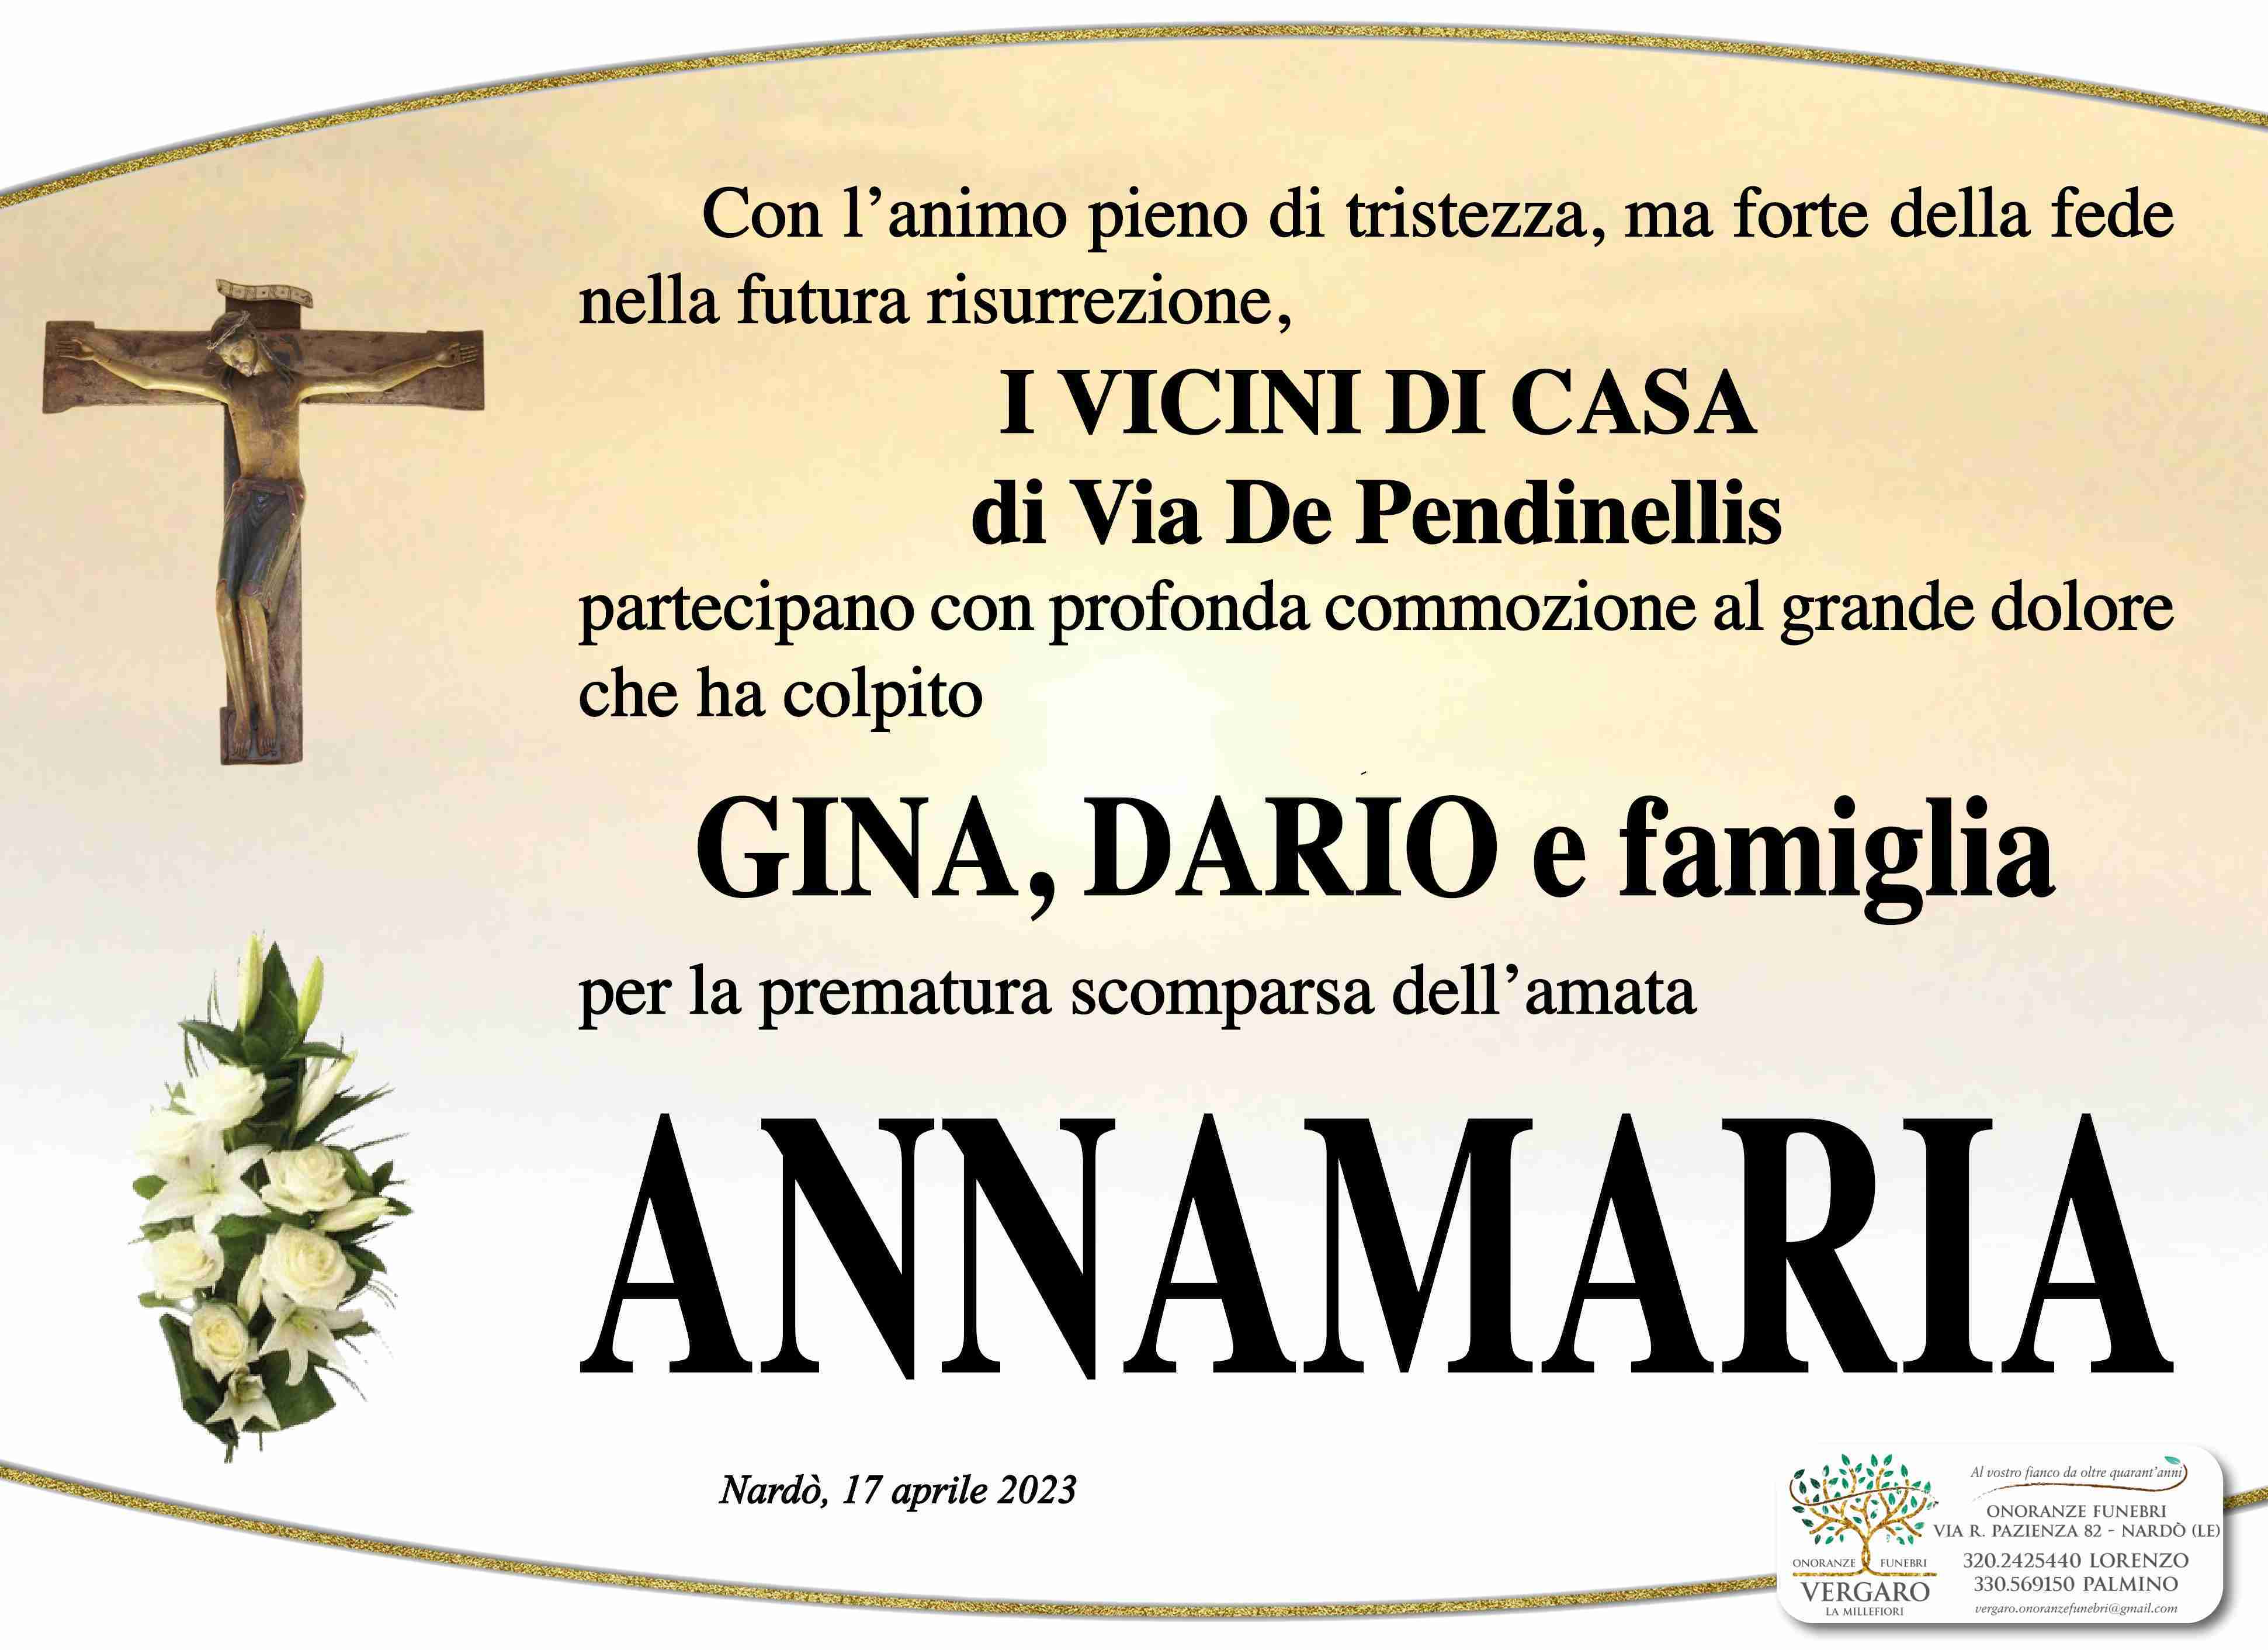 Annamaria Fracella